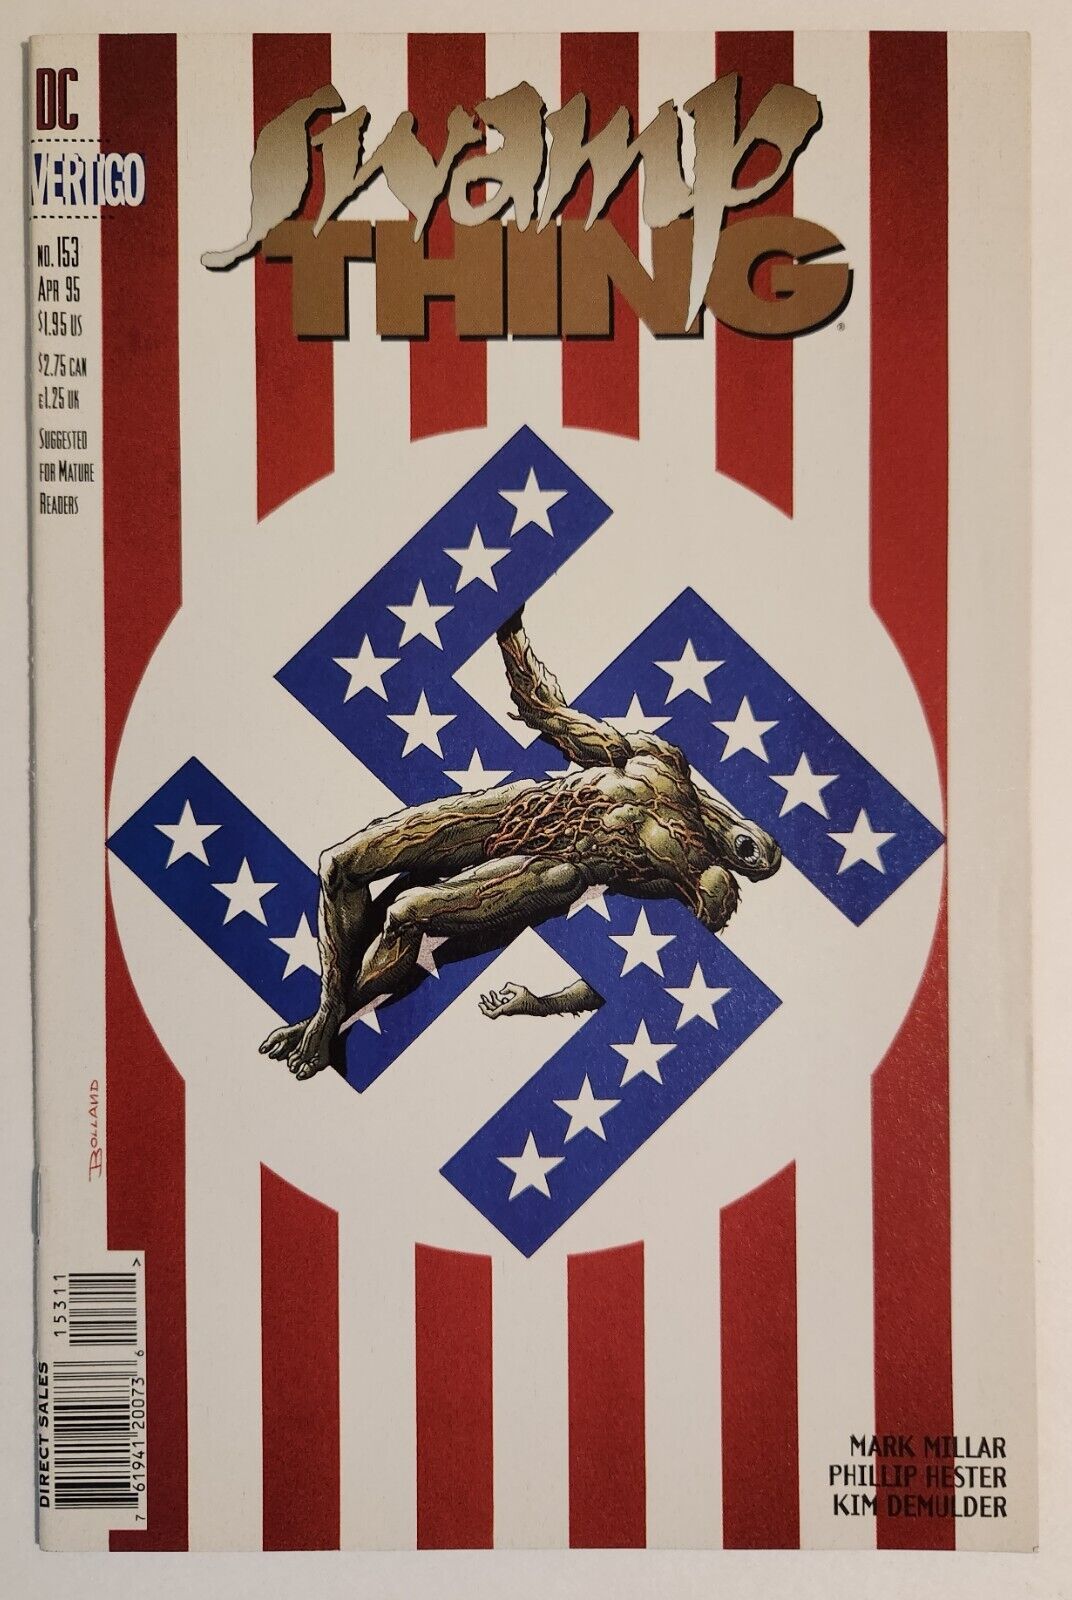 Swamp Thing #153 (1995, DC/Vertigo) VF+ Brian Bolland Swastika Cover